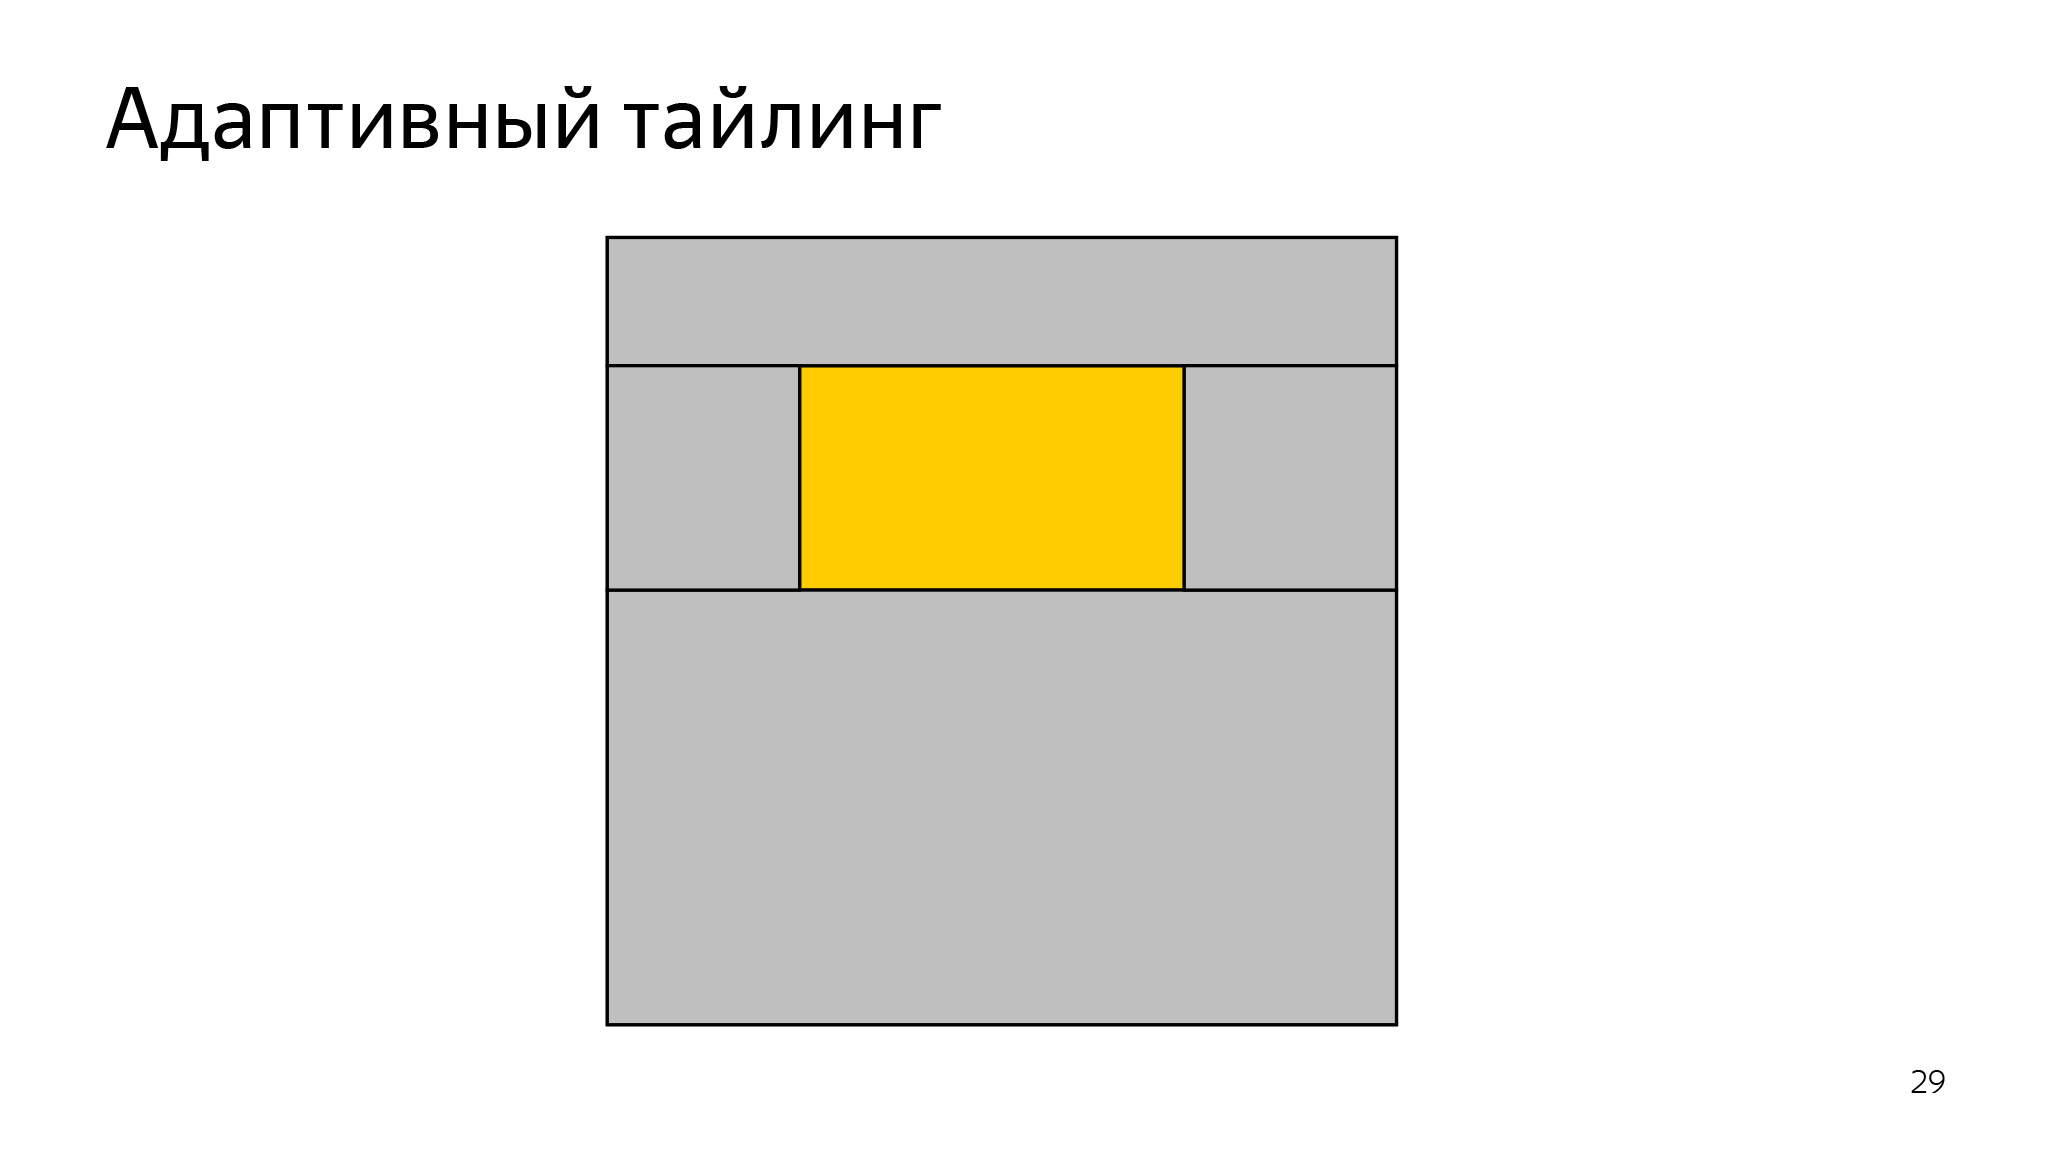 Как сэкономить ресурсы в браузере и не сломать веб. Доклад Яндекса - 16